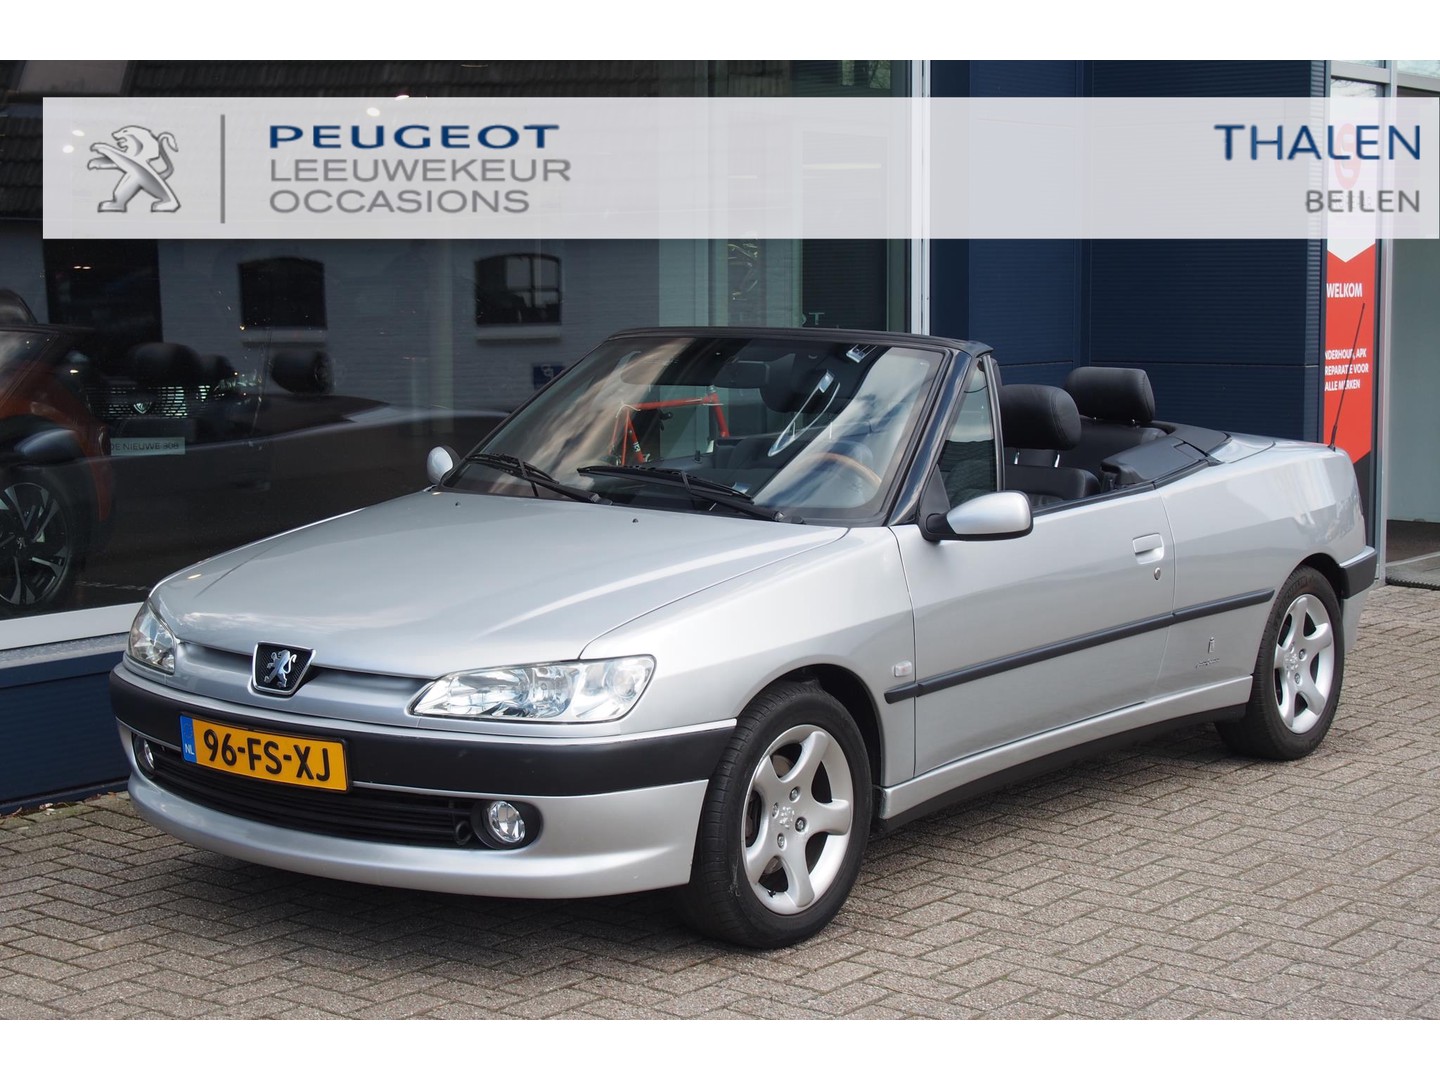 Peugeot 306 1.6 cabriolet aut uit privecollectie! keurige 306 cabrio automaat van 1e eigenaar met slechts 71.000 km!